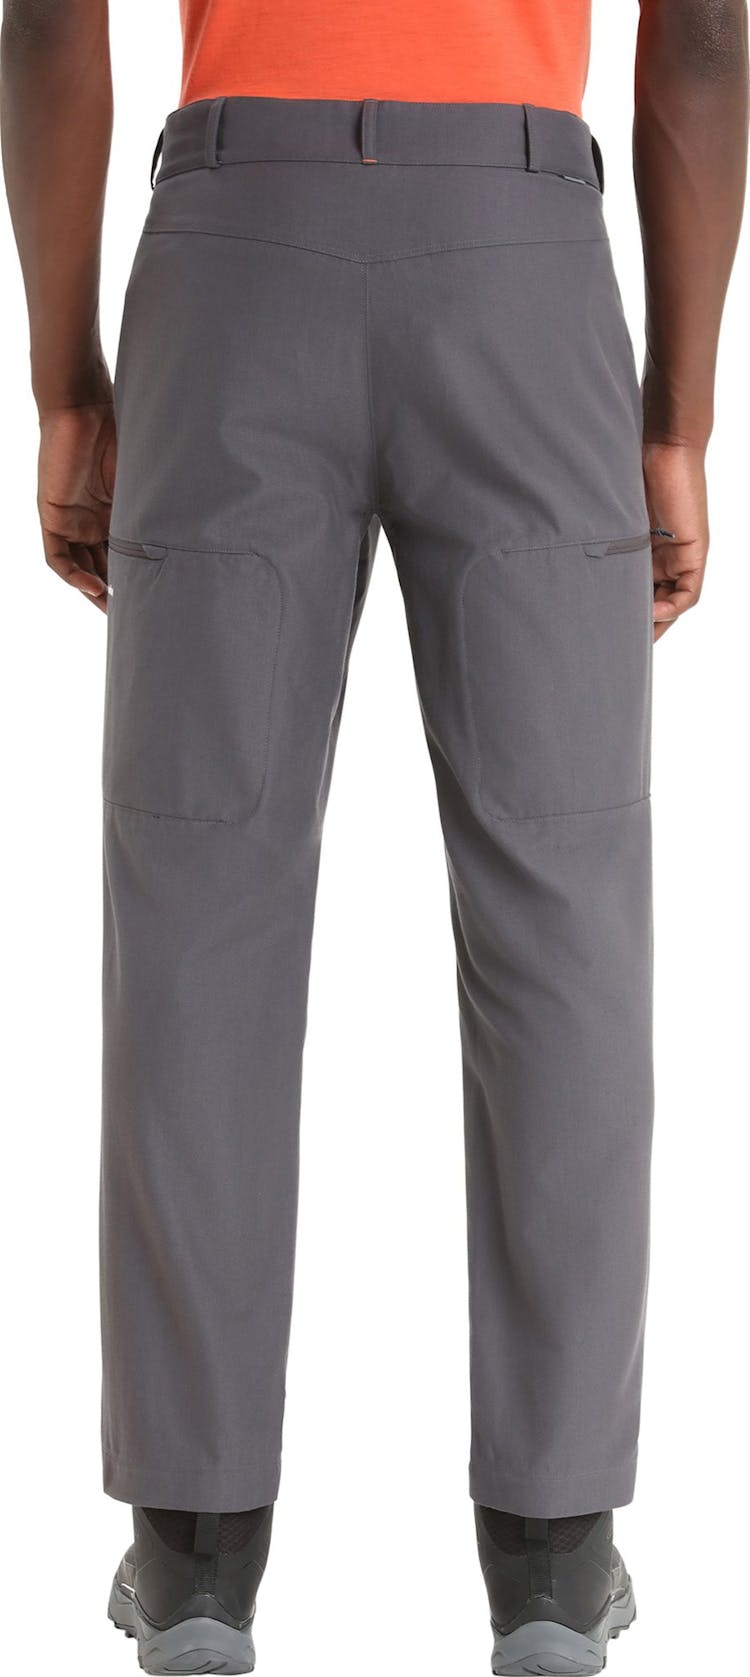 Numéro de l'image de la galerie de produits 3 pour le produit Pantalon de randonnée en mérinos - Homme